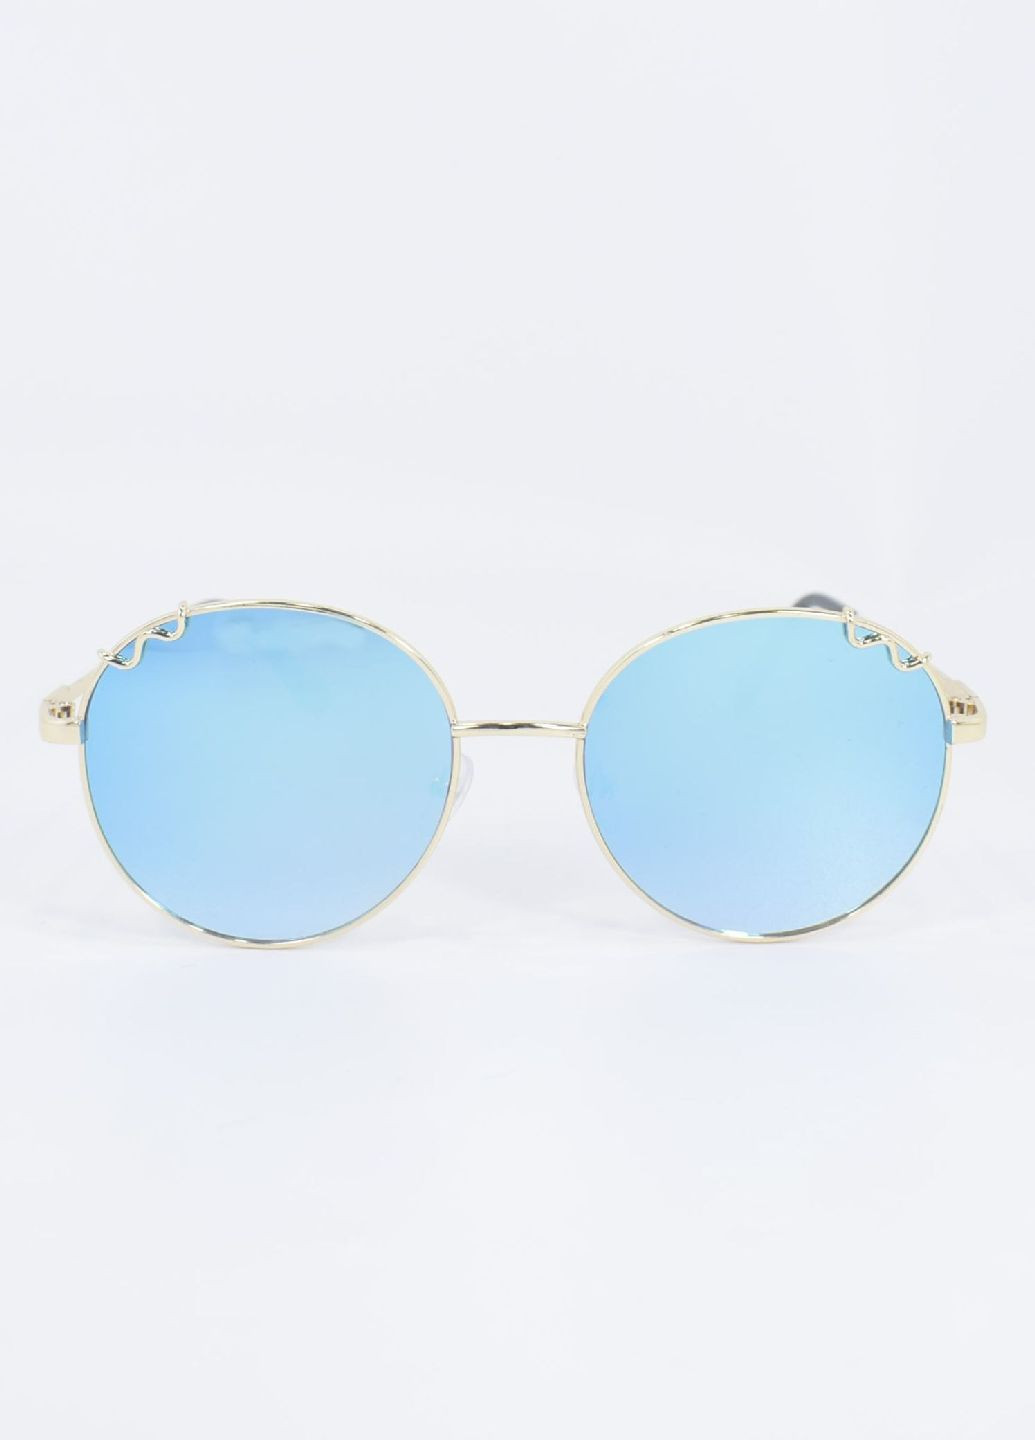 Солнцезащитные очки 100121 Merlini голубые